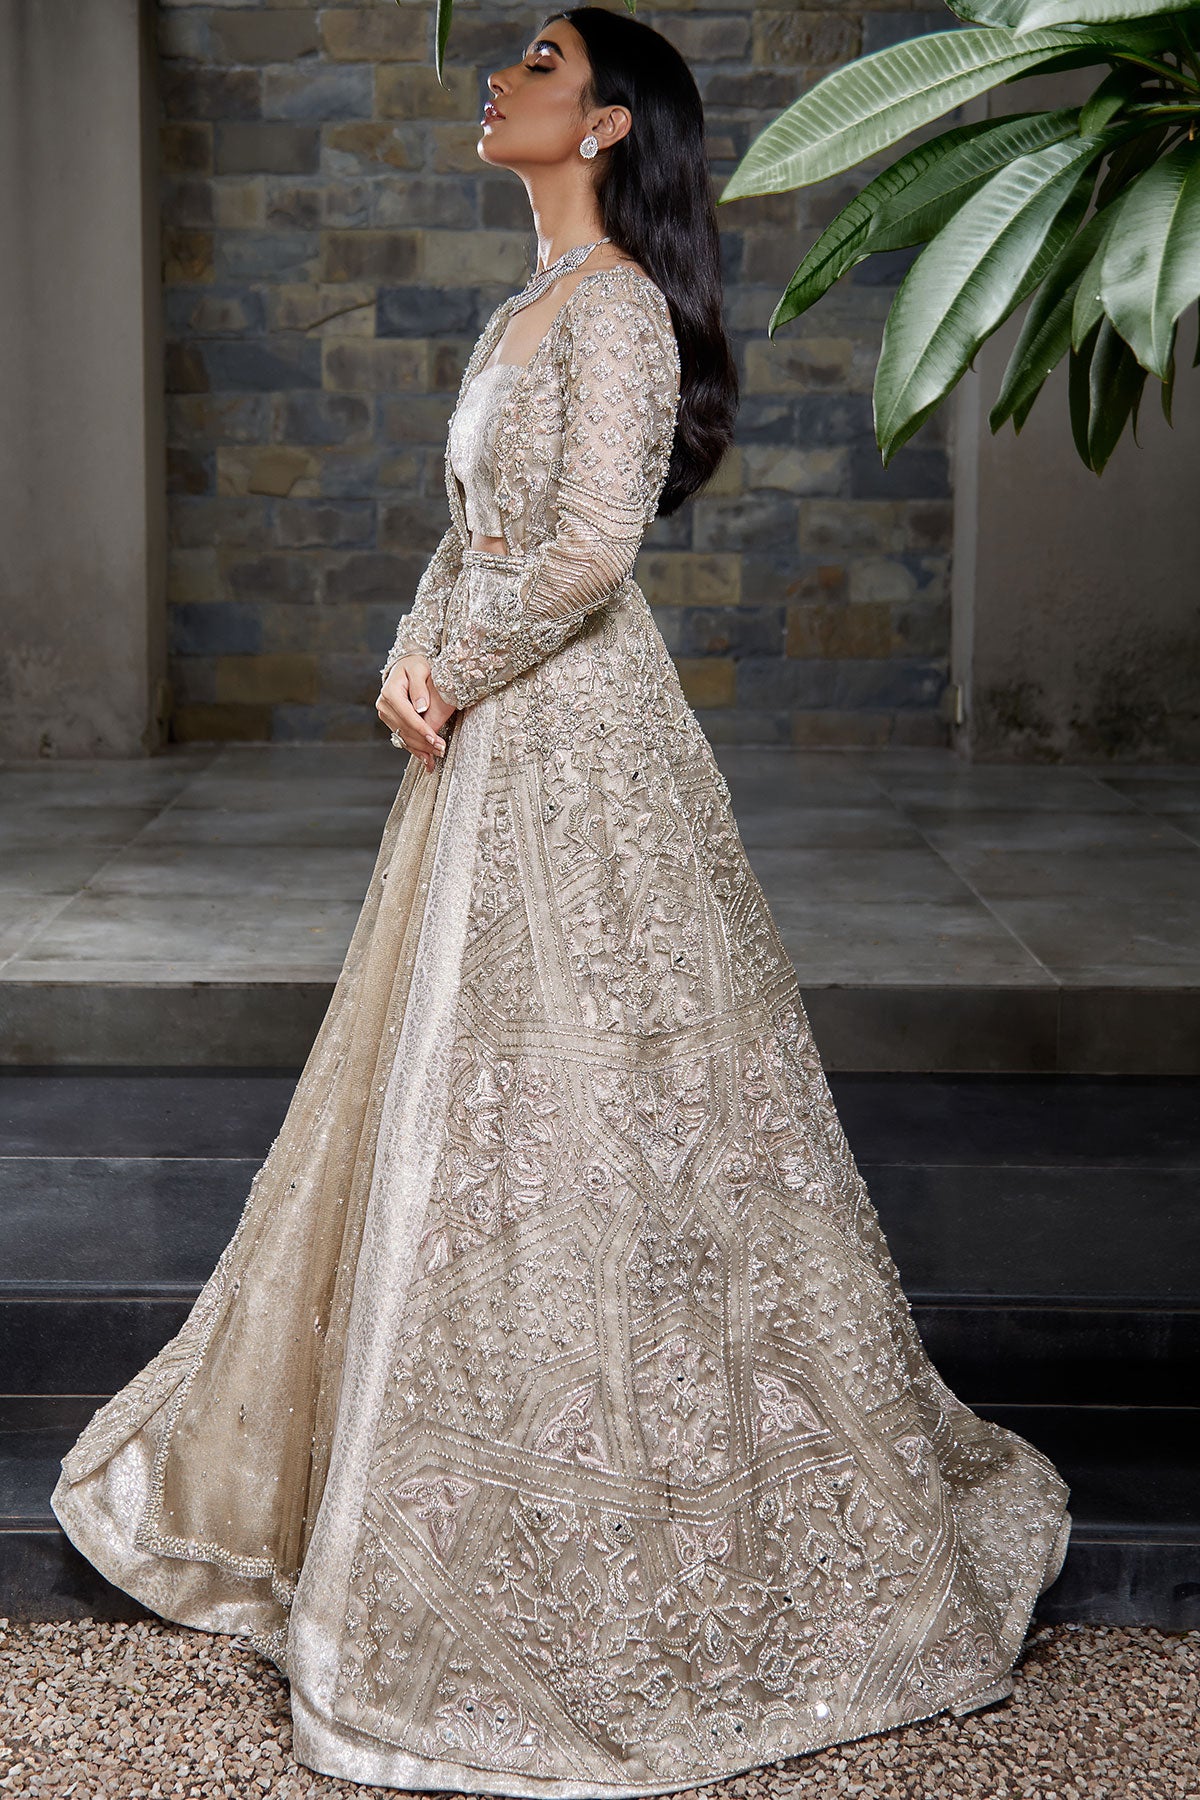 Tissue Pakistani Wedding Clothing: Buy Tissue Pakistani Wedding Clothing  for Women Online in USA